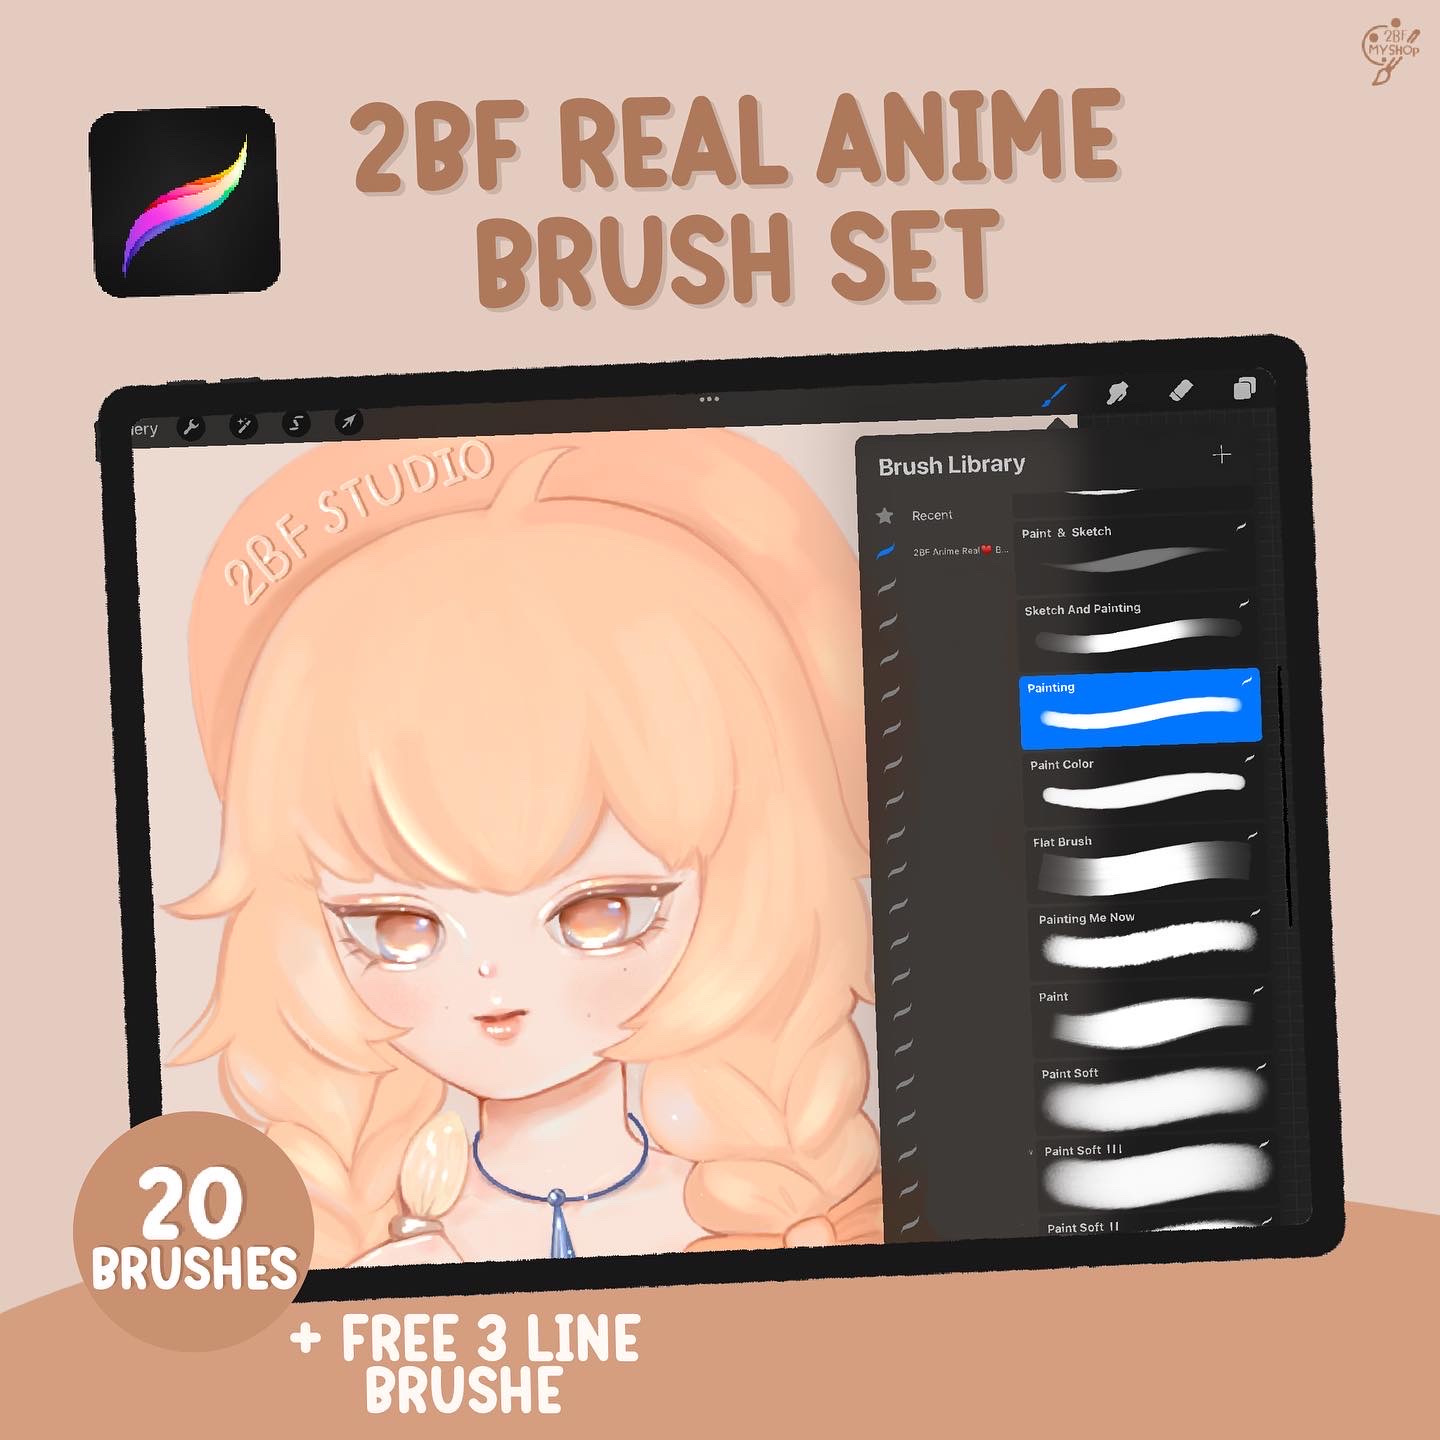 2BF Real Anime Brush Set |PROCREAT BRUSHED|